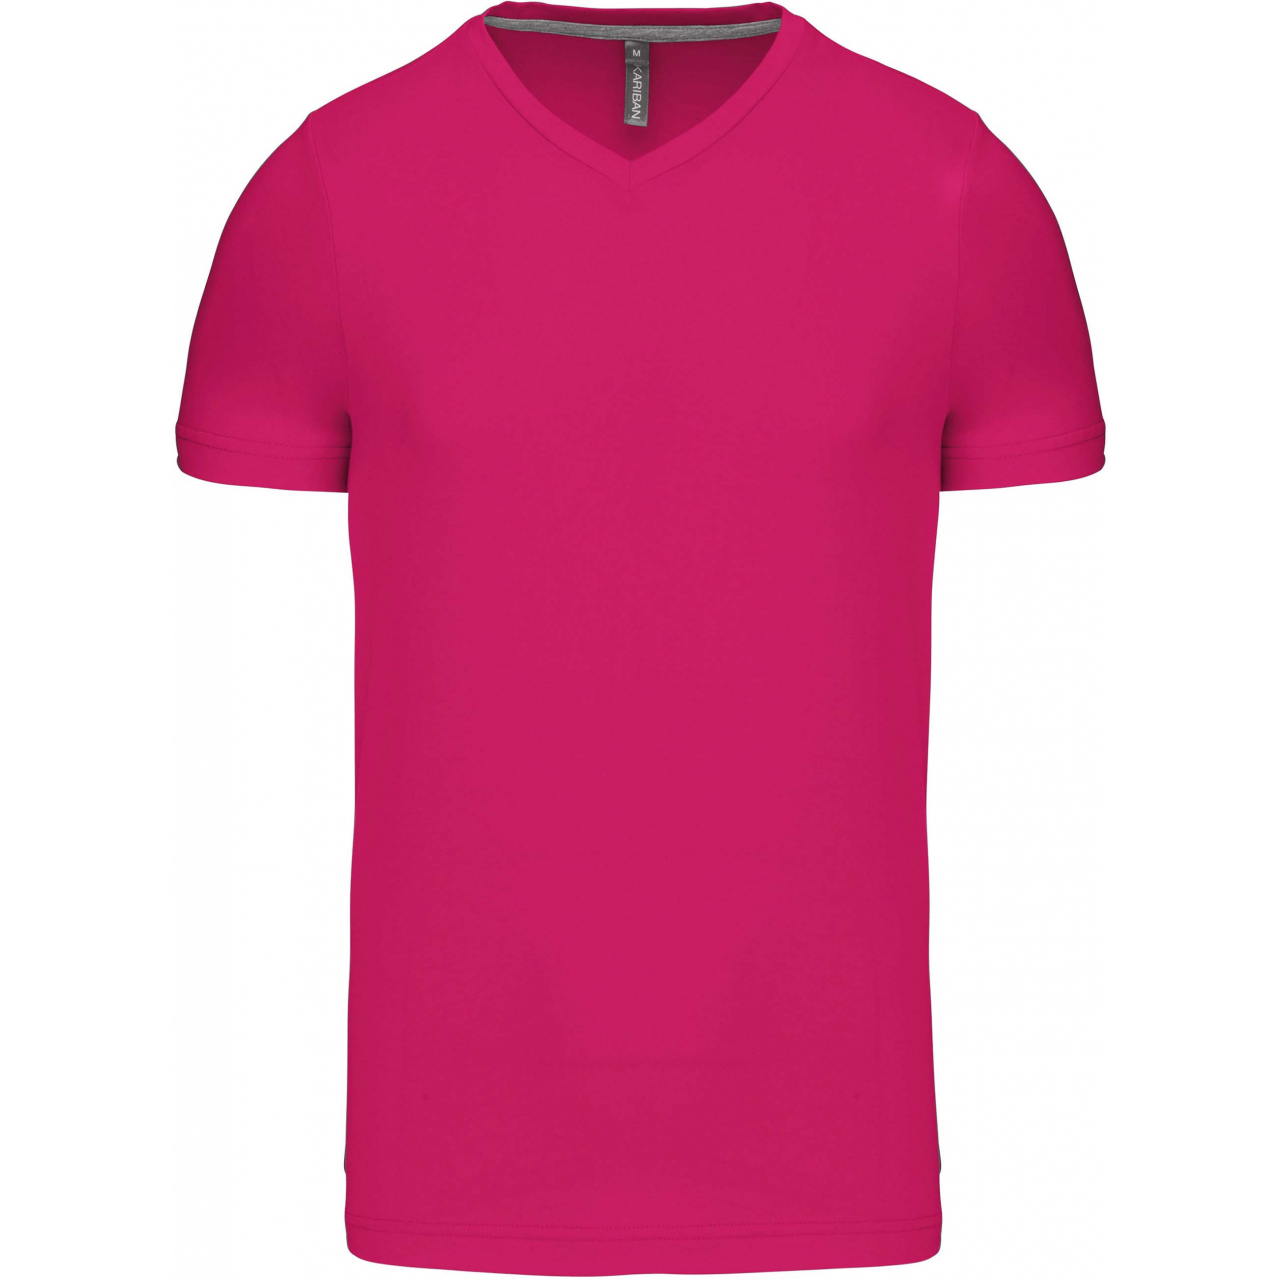 Pánské tričko Kariban krátký rukáv V-neck - růžové, XL